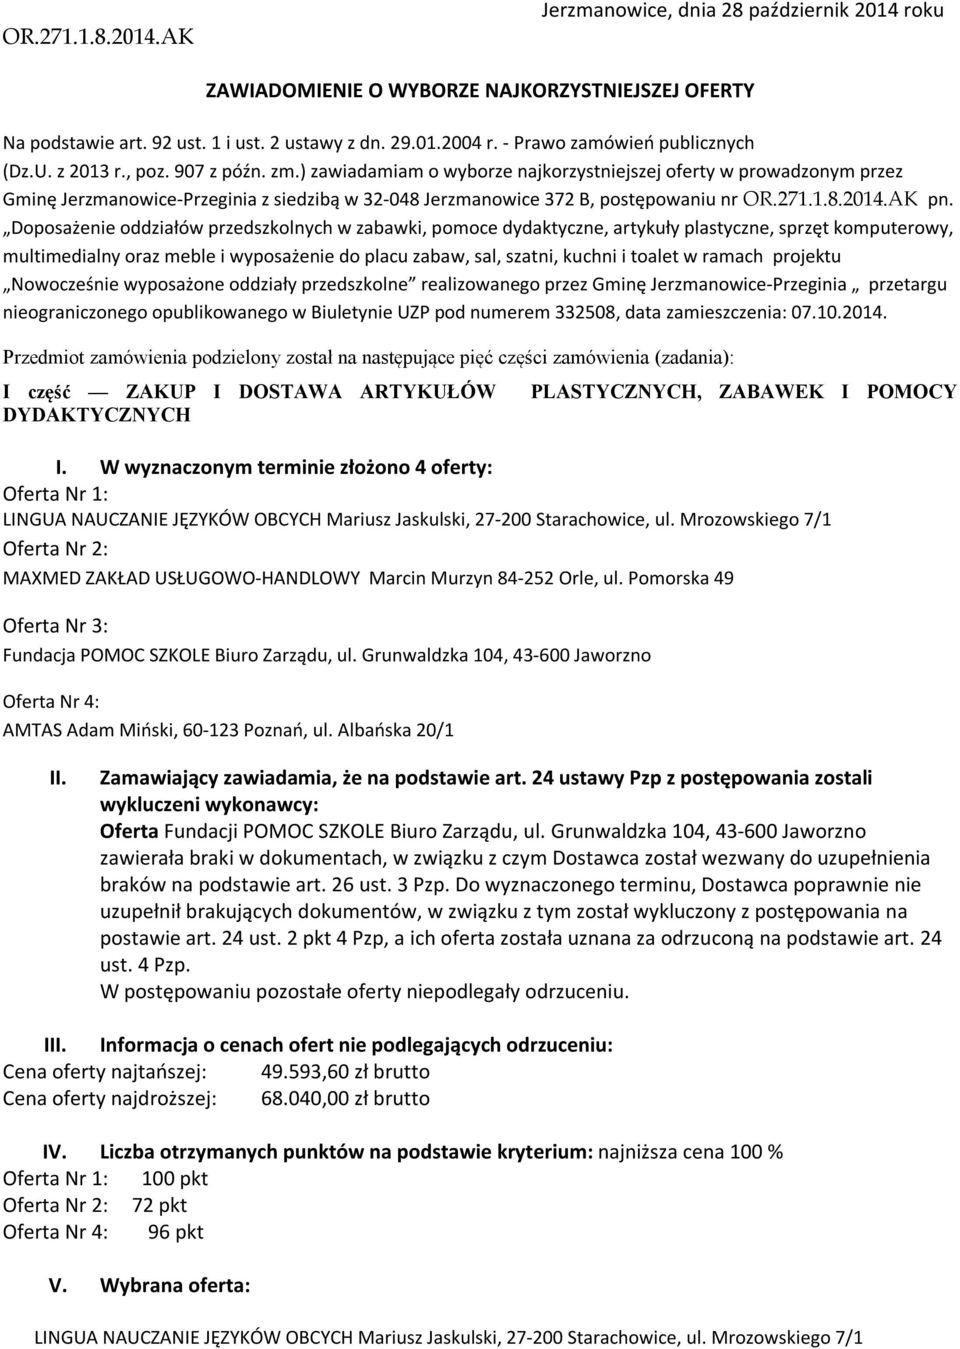 ) zawiadamiam o wyborze najkorzystniejszej oferty w prowadzonym przez Gminę Jerzmanowice-Przeginia z siedzibą w 32-048 Jerzmanowice 372 B, postępowaniu nr OR.271.1.8.2014.AK pn.